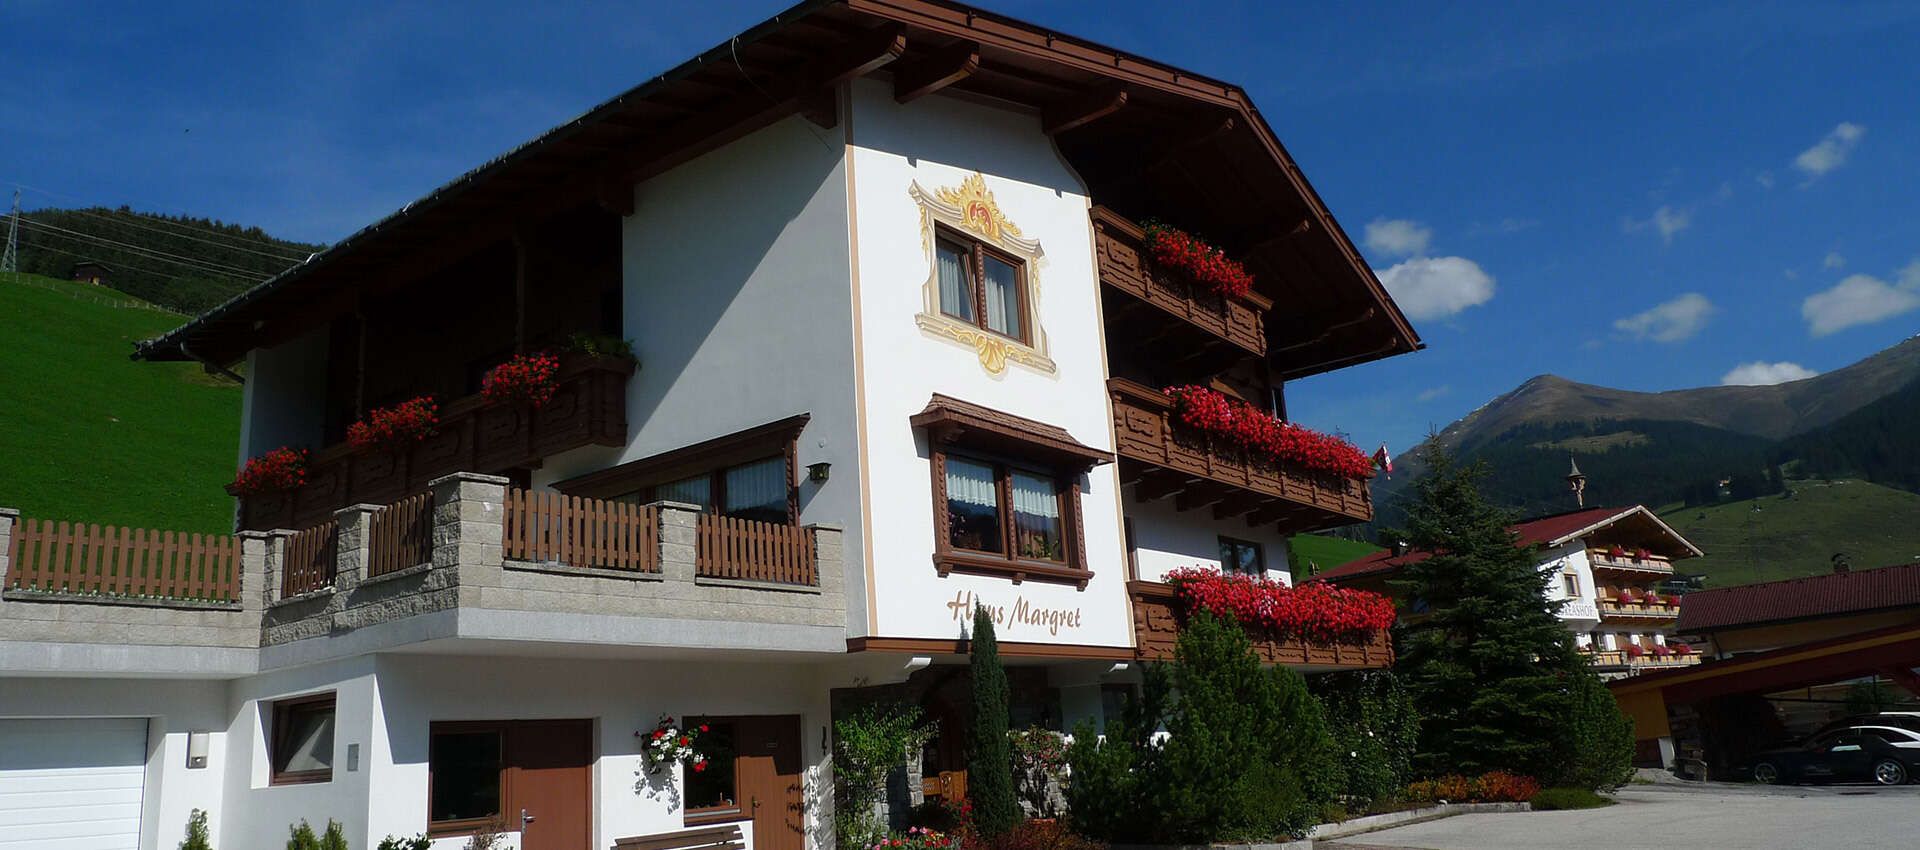 Haus Margret in Gerlos im Zillertal im Sommer in Tirol